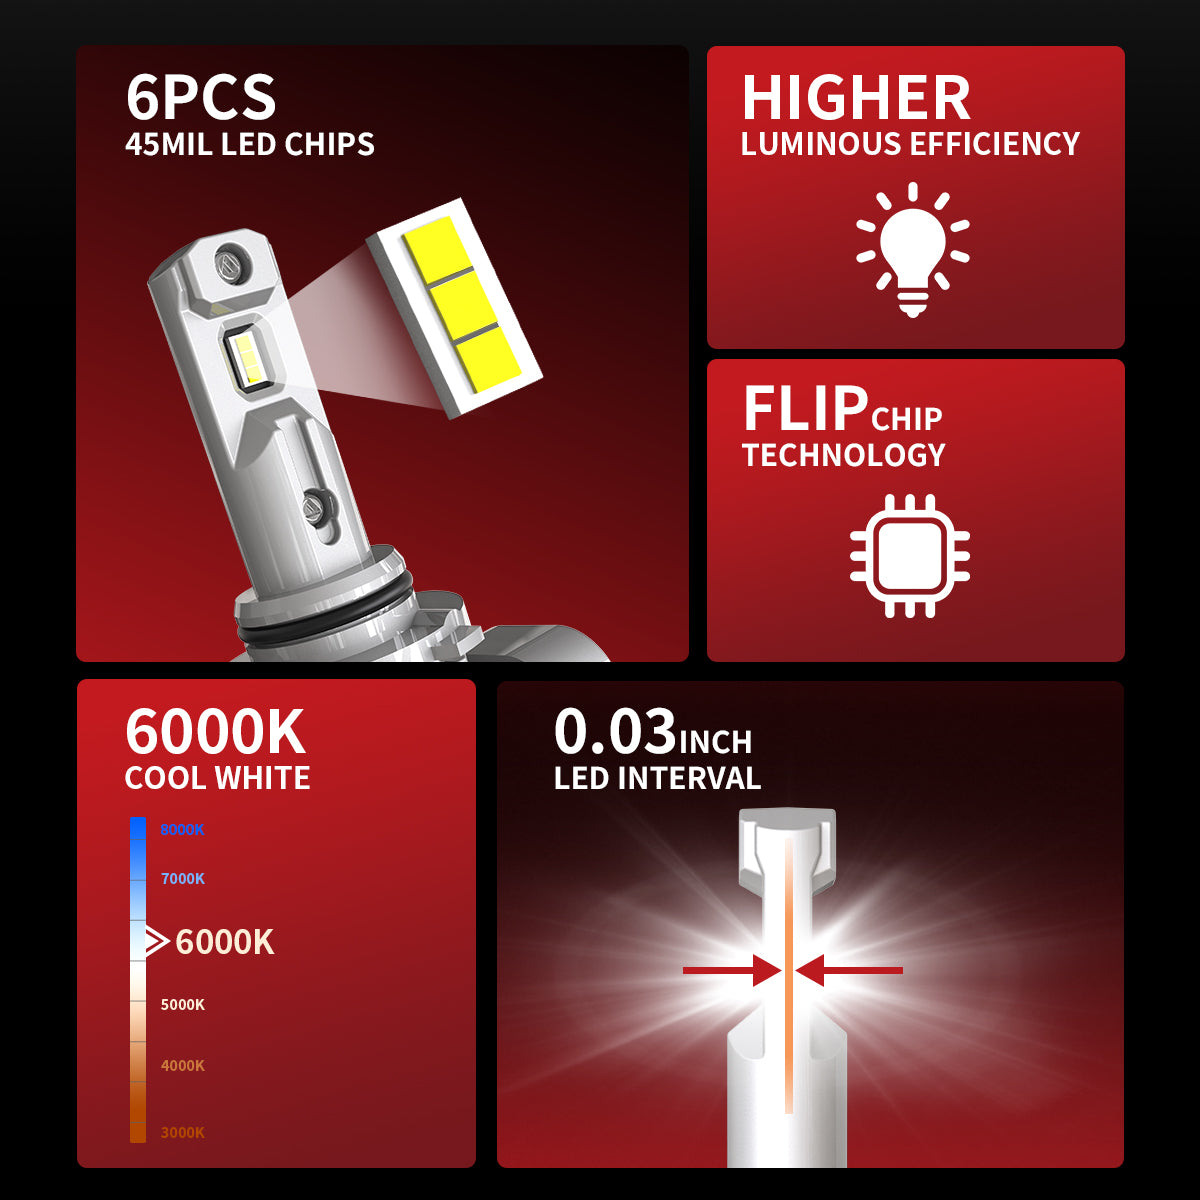 Lasfit 9005 HB3 LED Headlight Bulbs Amplified Flux Beam, Internal Driver  60W 6000LM 6000K,2 Bulbs